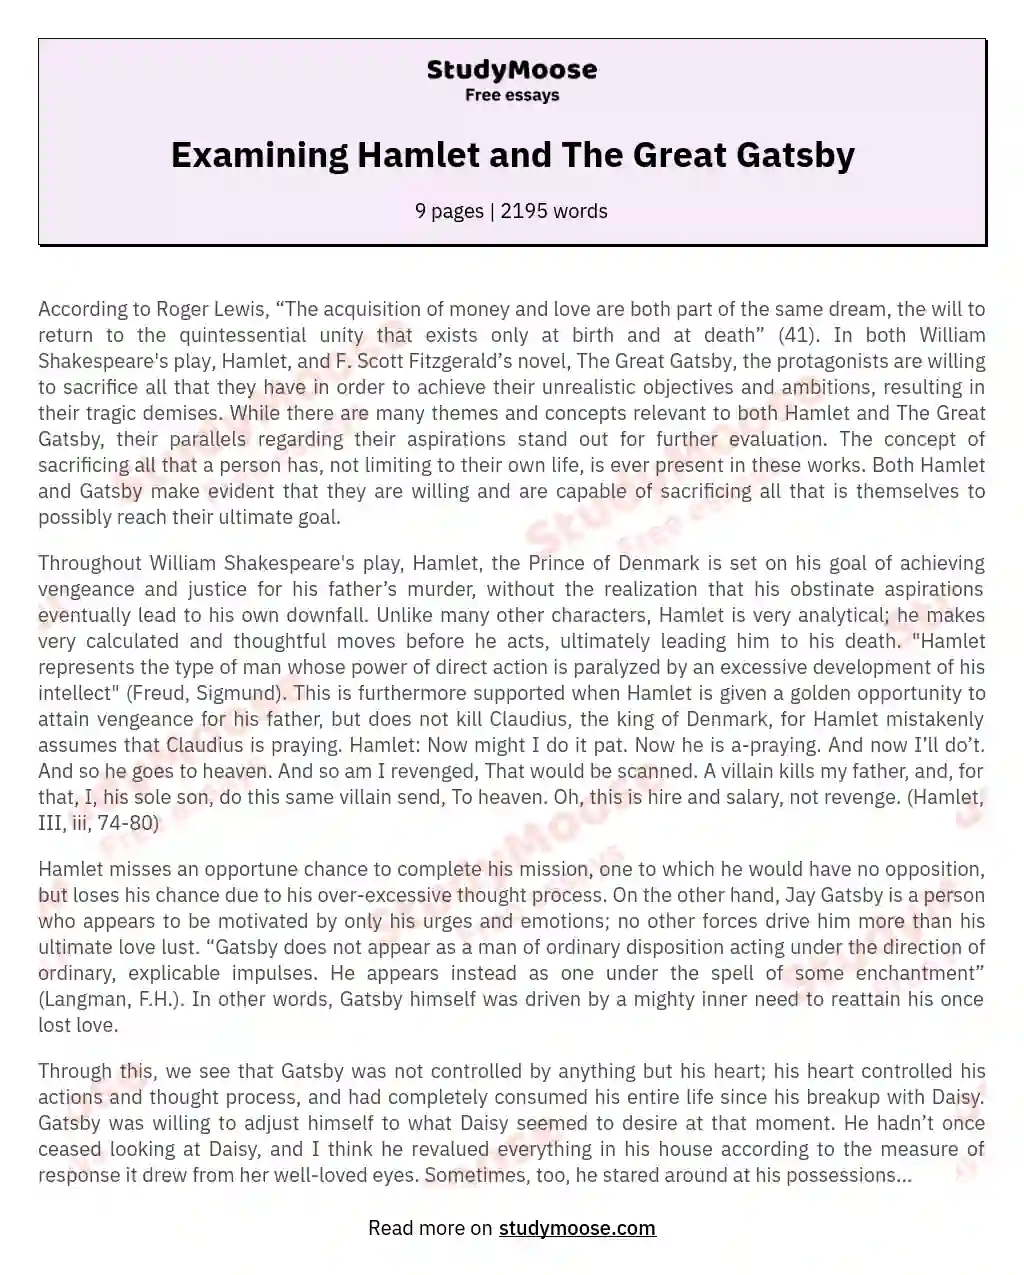 Examining Hamlet and The Great Gatsby essay